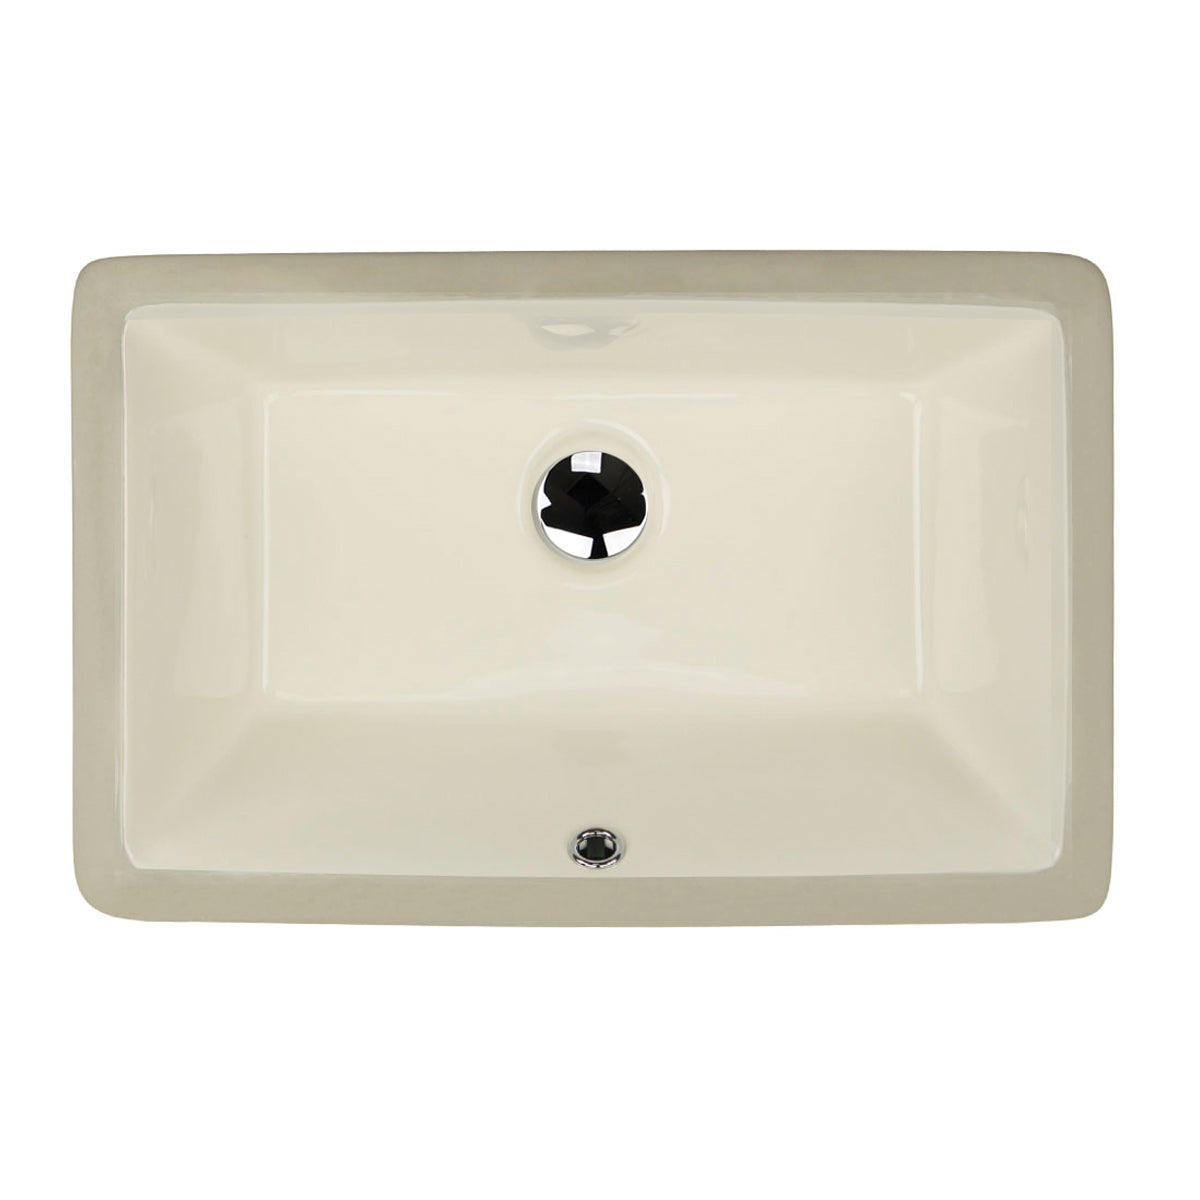 Nantucket Sinks  19 Inch X 11 Inch Undermount Ceramic Sink In Bisque UM-19x11-B